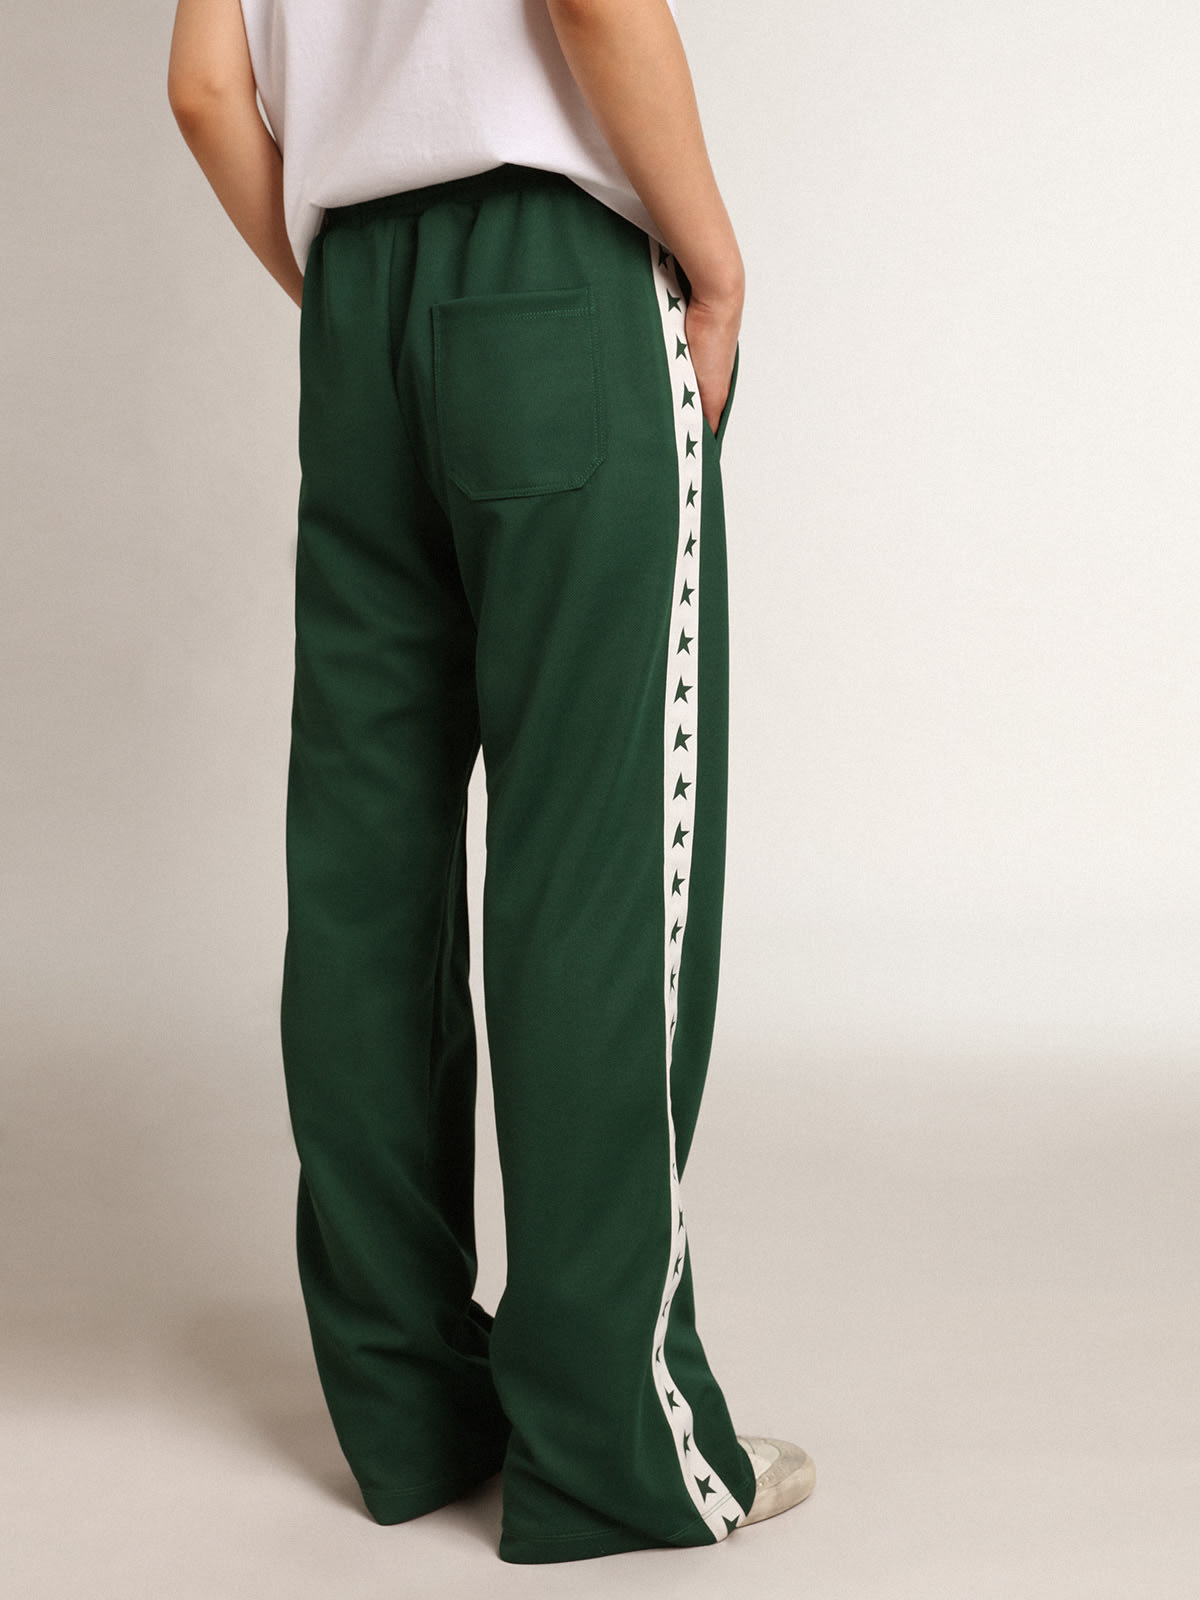 Golden Goose - Pantalon de jogging femme vert brillant avec bande et étoiles in 